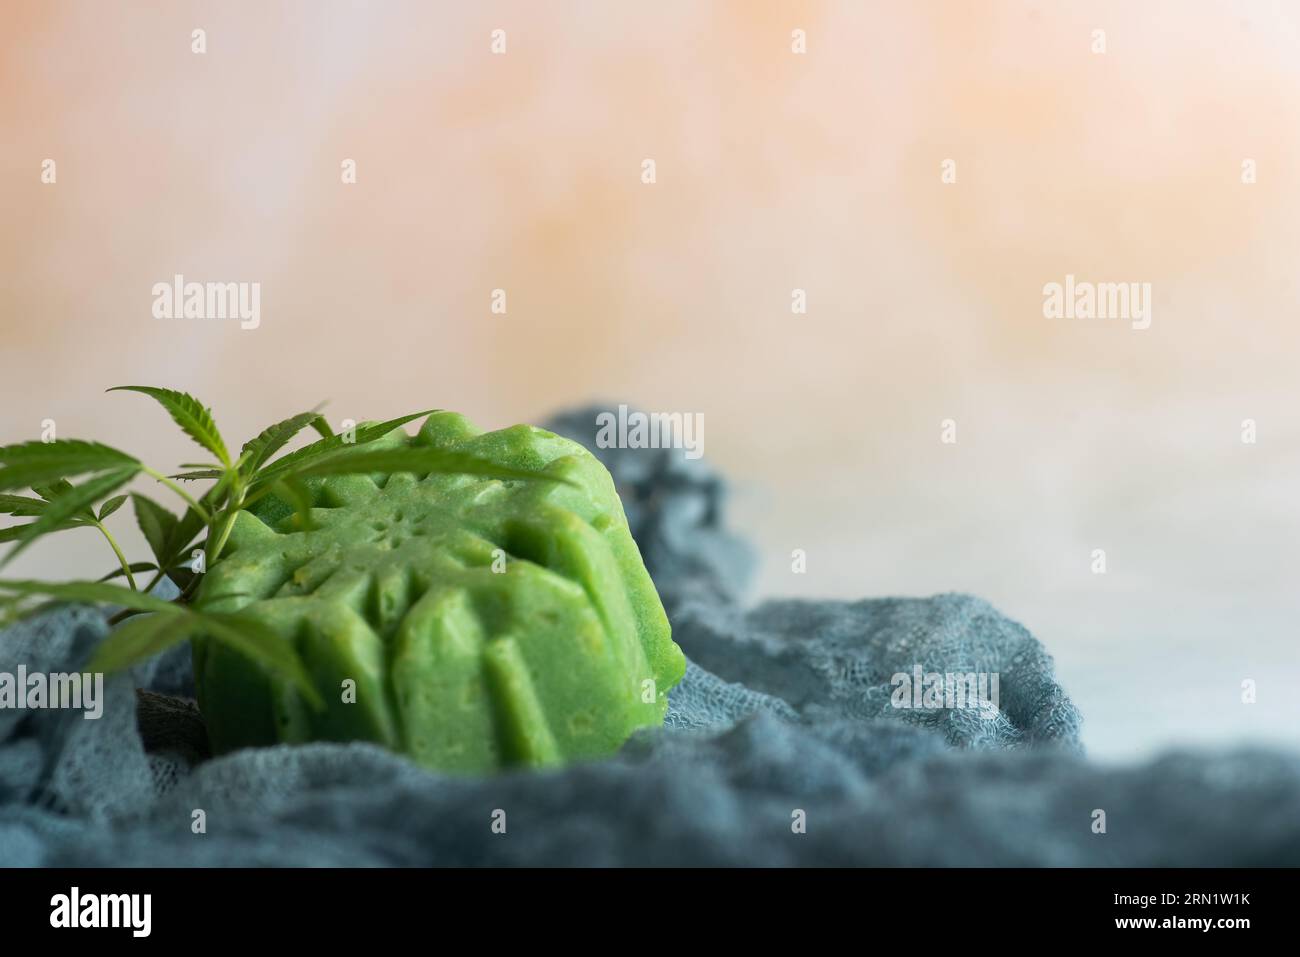 Grüne Seife auf Marihuana-Basis mit einem frischen Marihuana-Blatt auf hellem Hintergrund Stockfoto